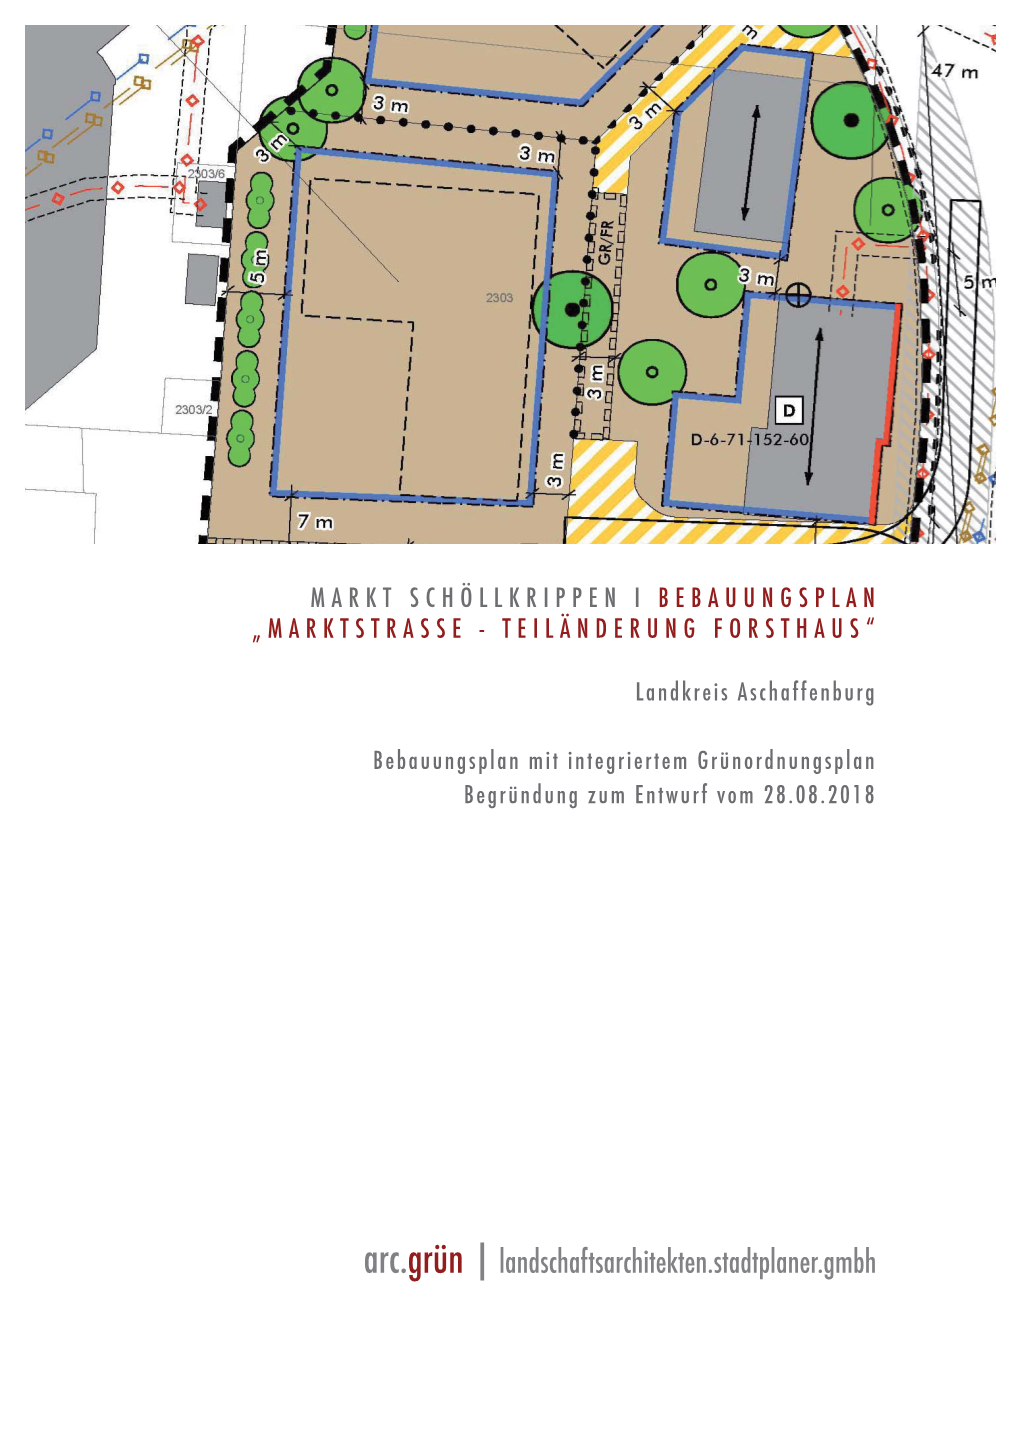 Markt Schöllkrippen I Bebauungsplan „Marktstrasse - Teiländerung Forsthaus“